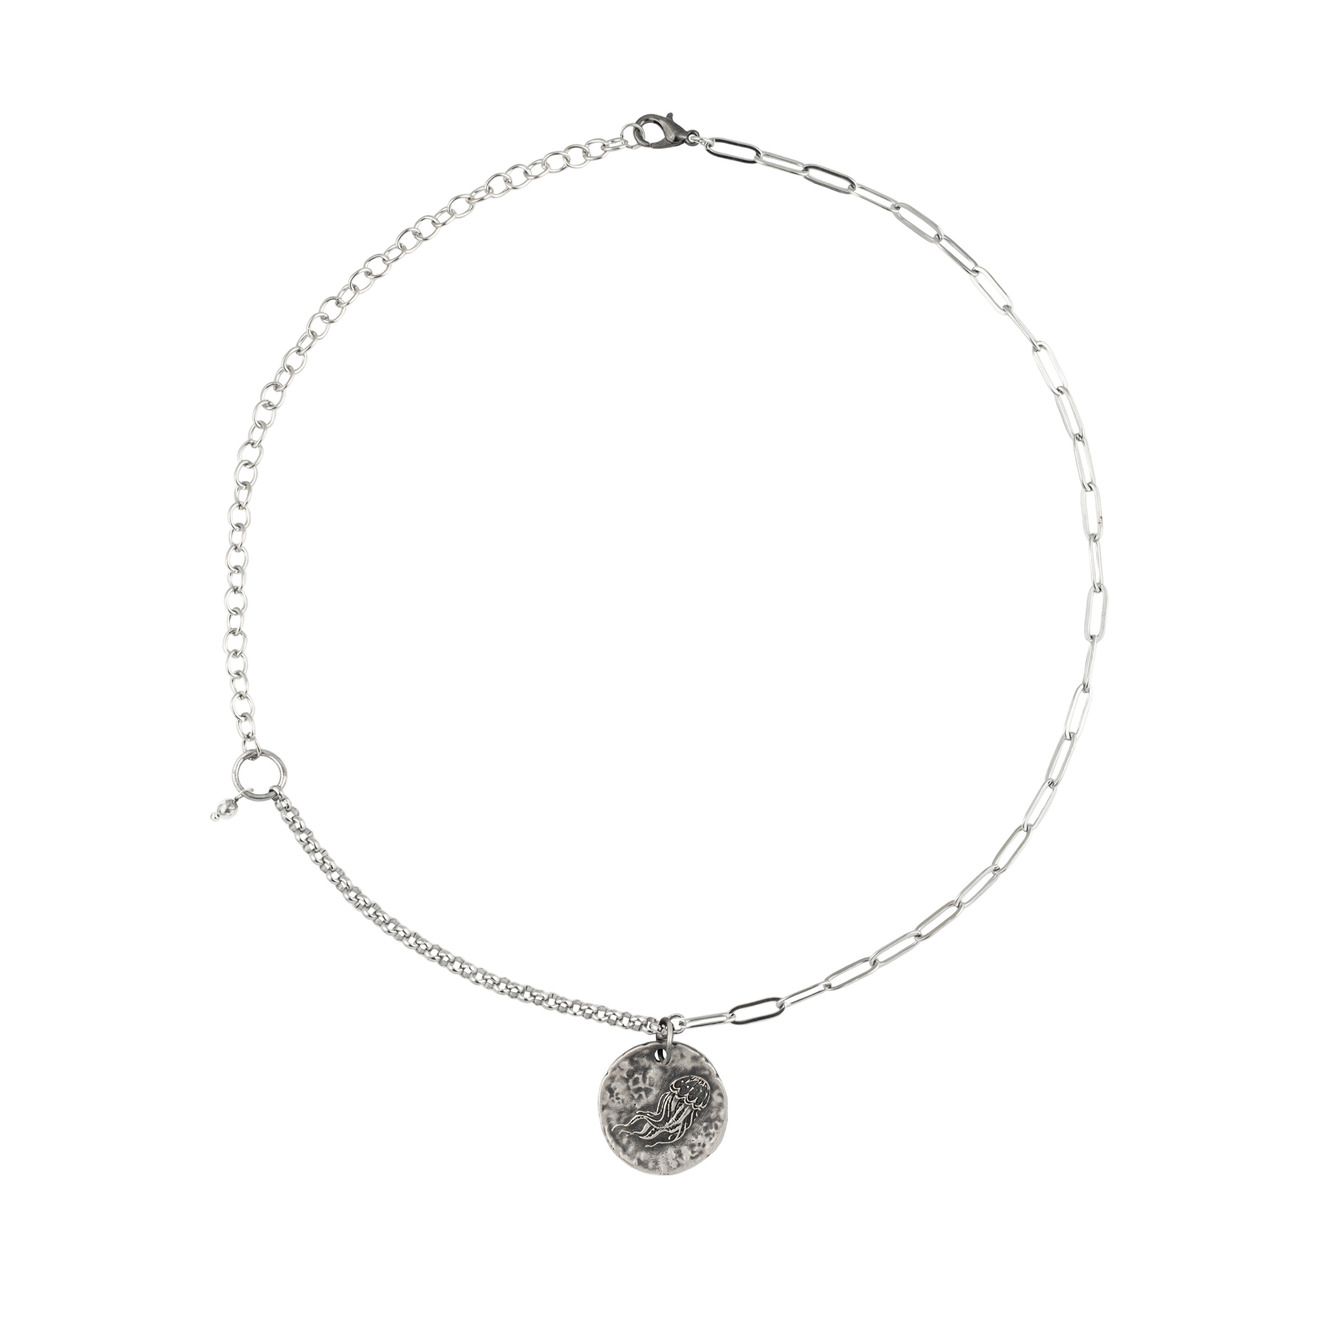 Svarog Sky Цепь с серебряным покрытием с круглой подвеской Медуза jenny bird цепь walter chain с серебряным покрытием